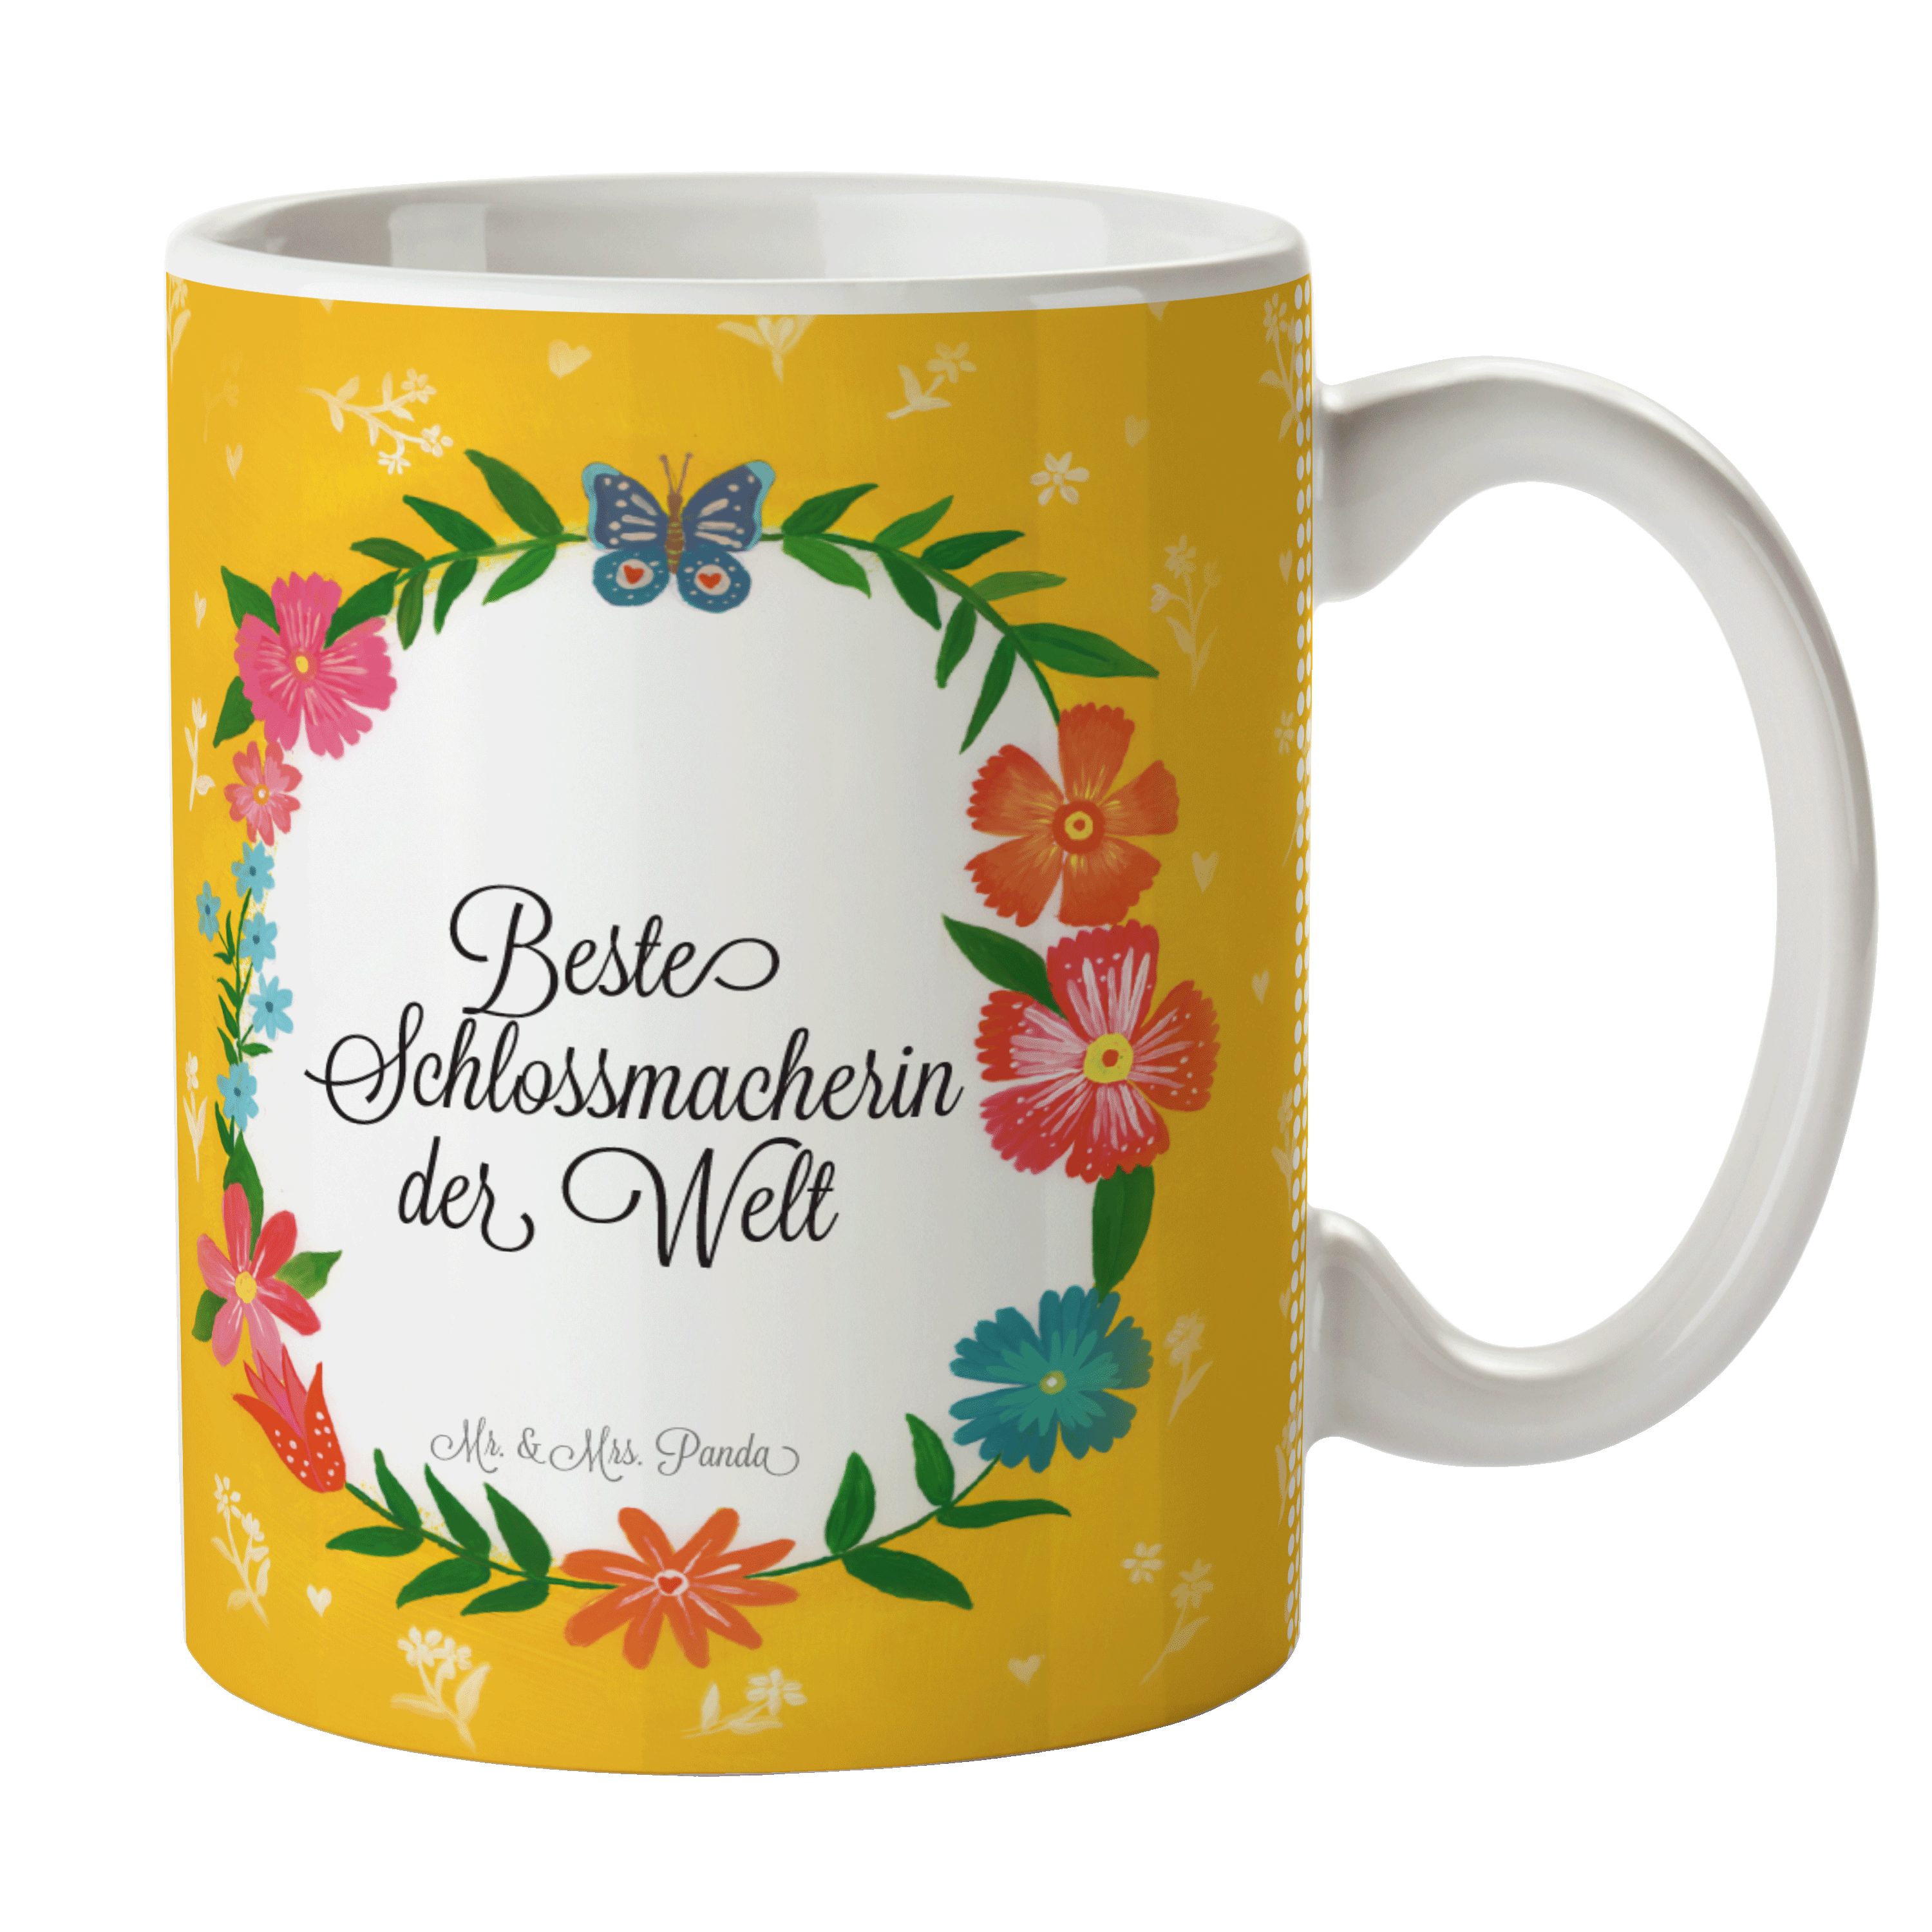 Mr. & Mrs. Panda Tasse Schlossmacherin - Geschenk, Gratulation, Kaffeebecher, Tasse Motive, Keramik